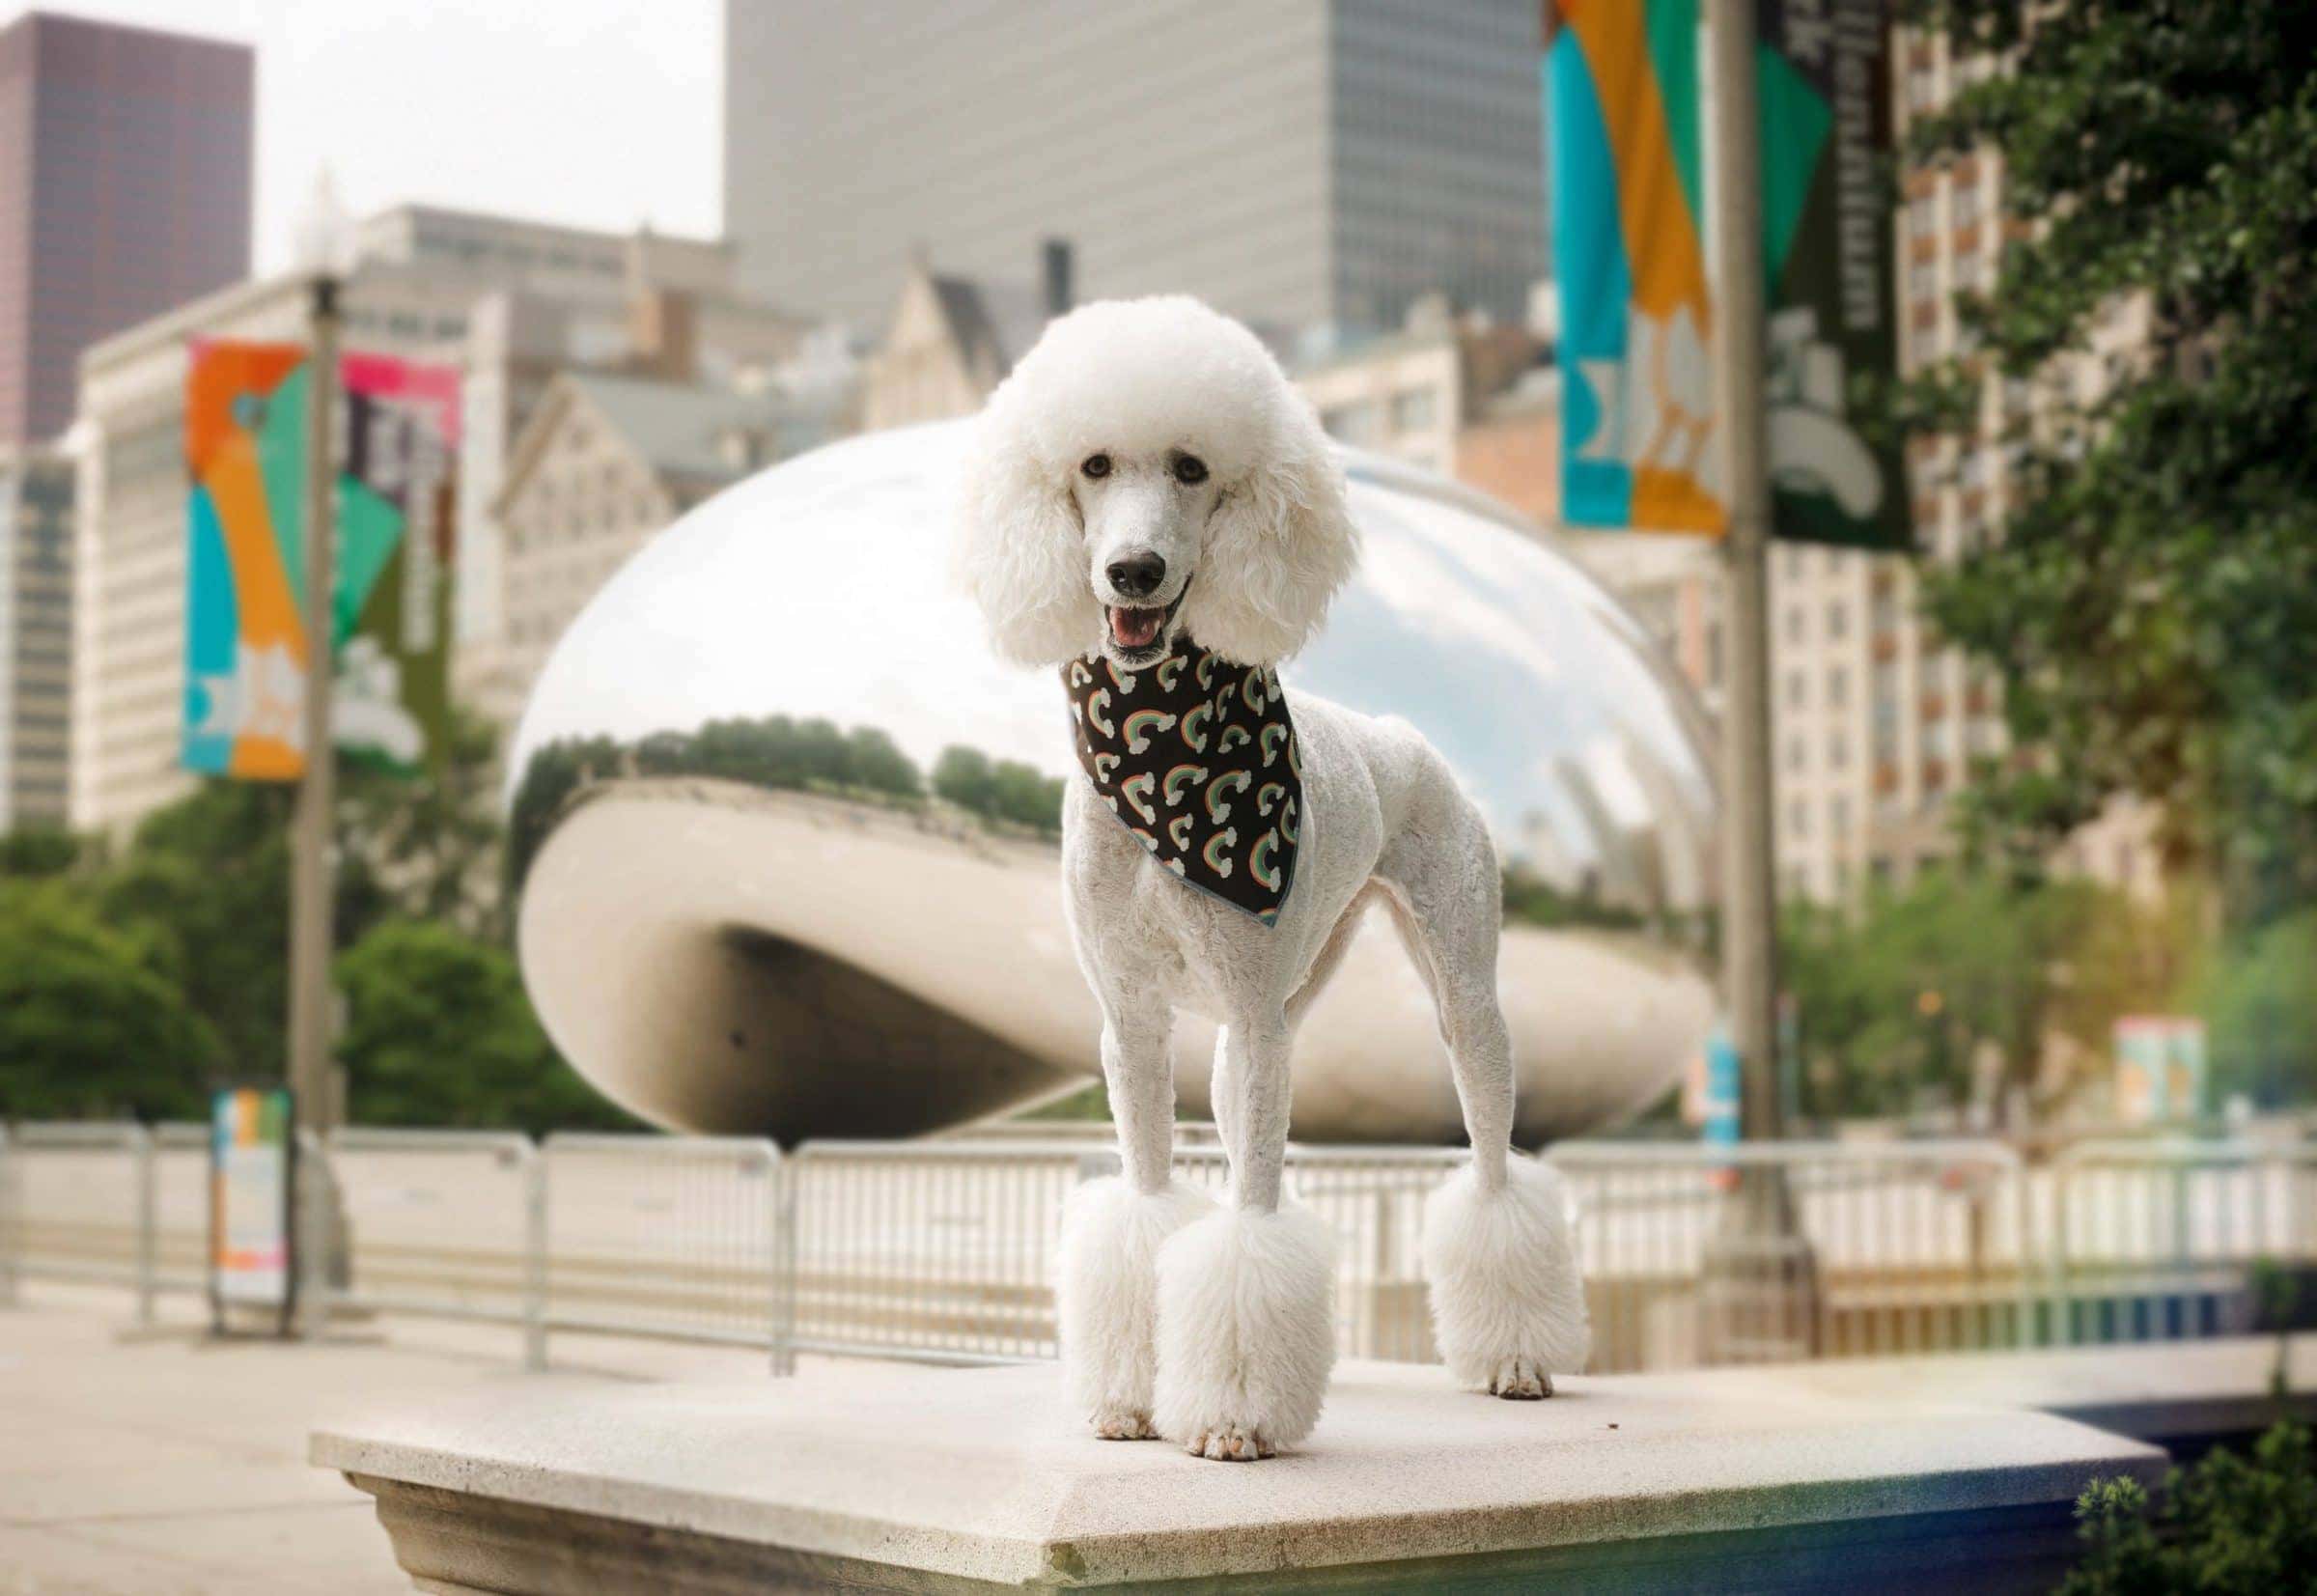 White poodle rainbow dog bandana Chicago